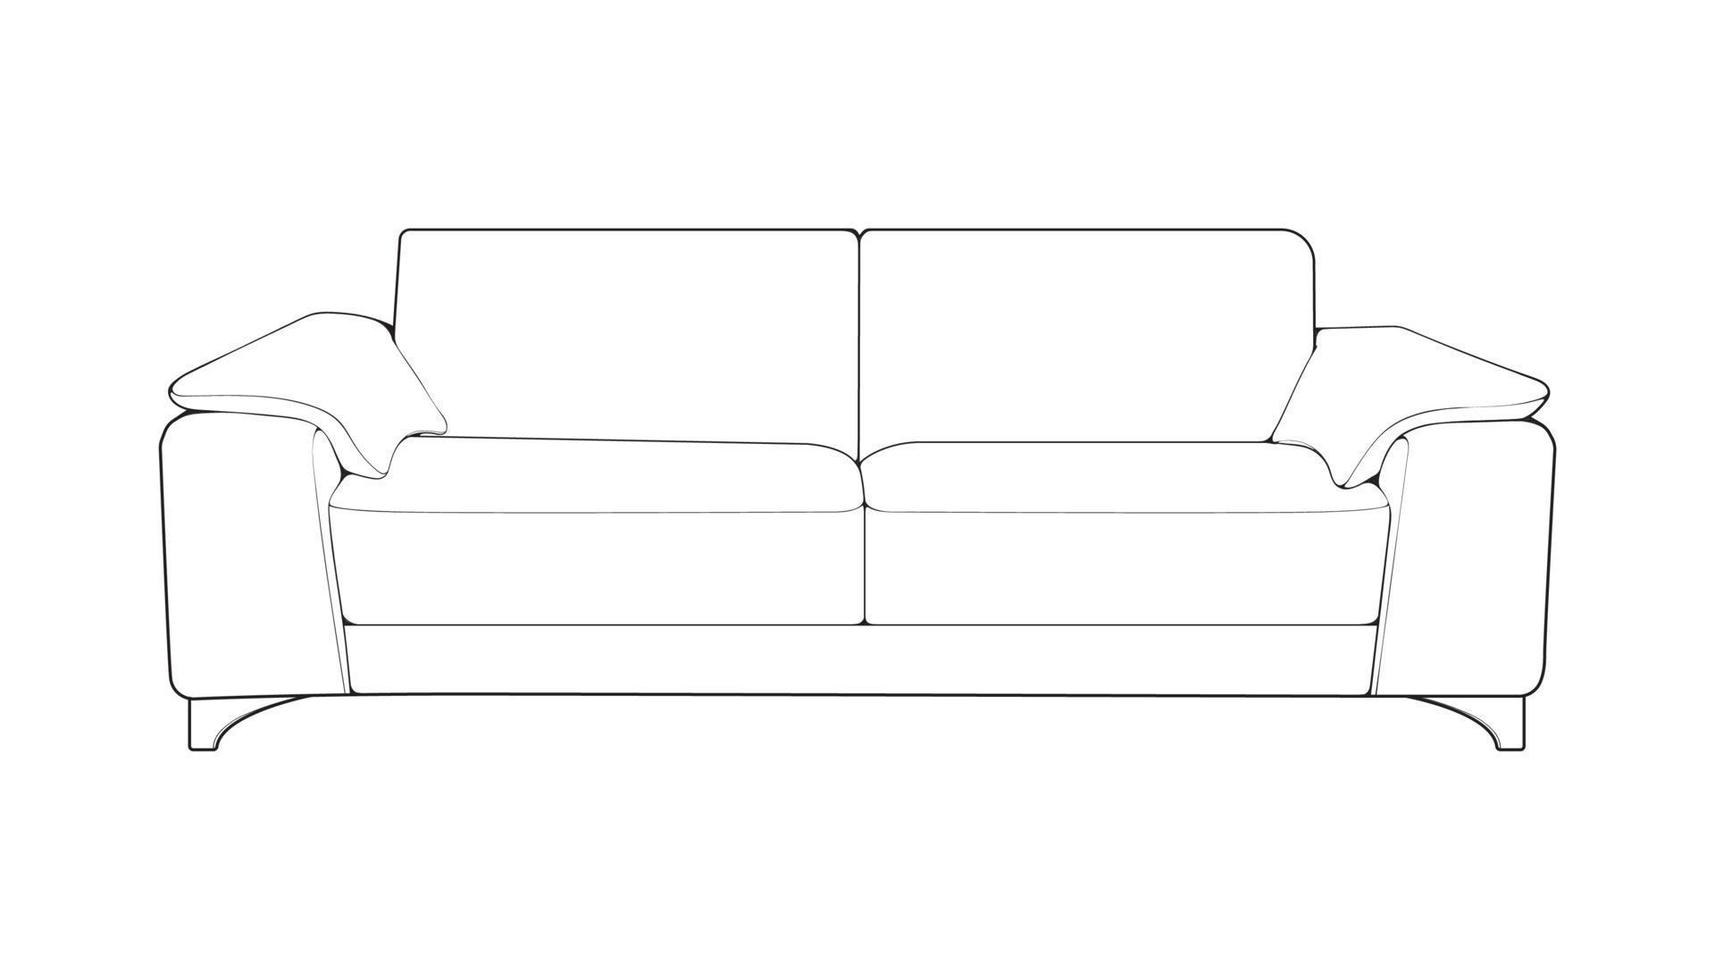 sofa oder couch line art illustrator. umriss möbel für wohnzimmer. Vektor-Illustration. vektor